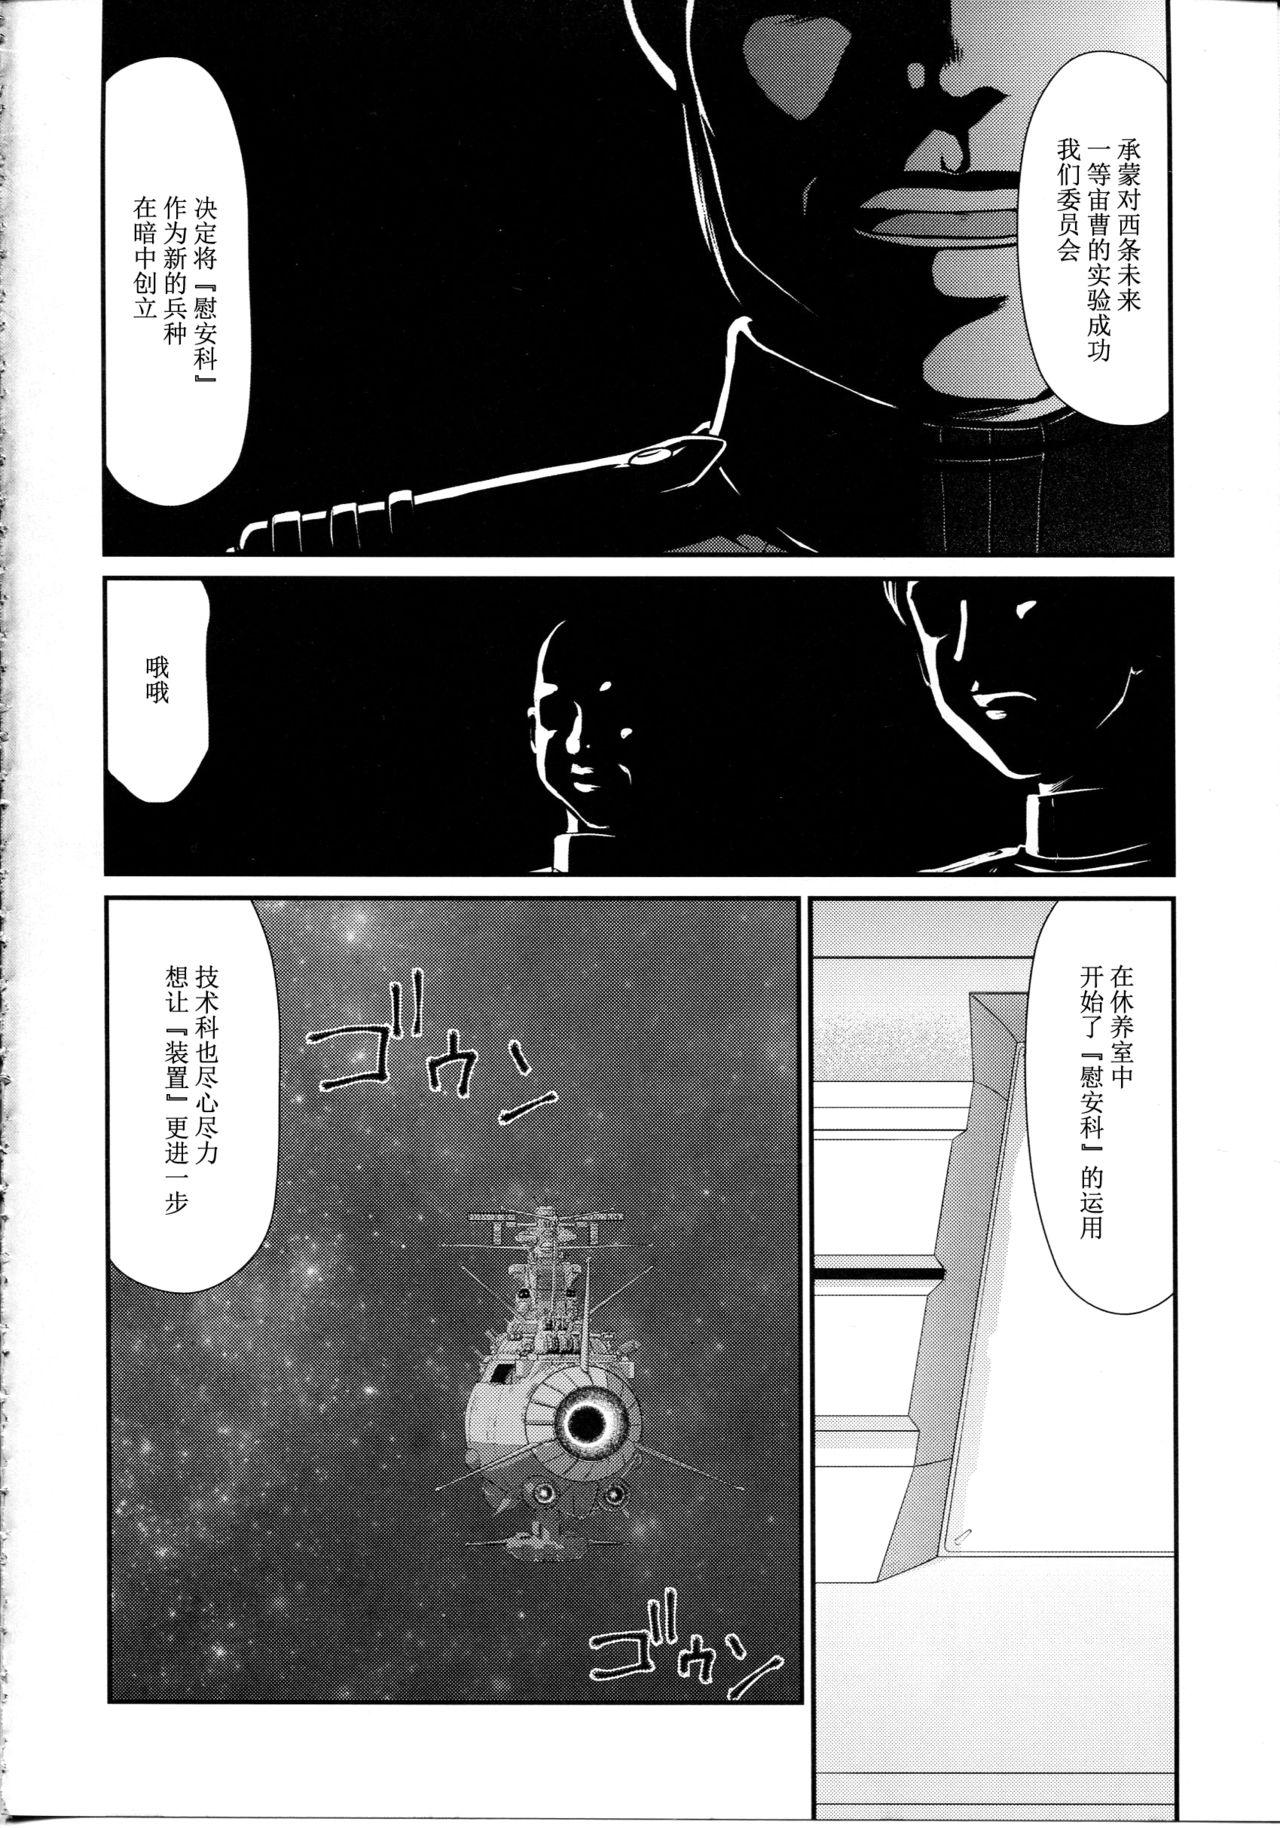 Buceta Yuki no Shizuku - Space battleship yamato 2199 Fishnet - Page 9